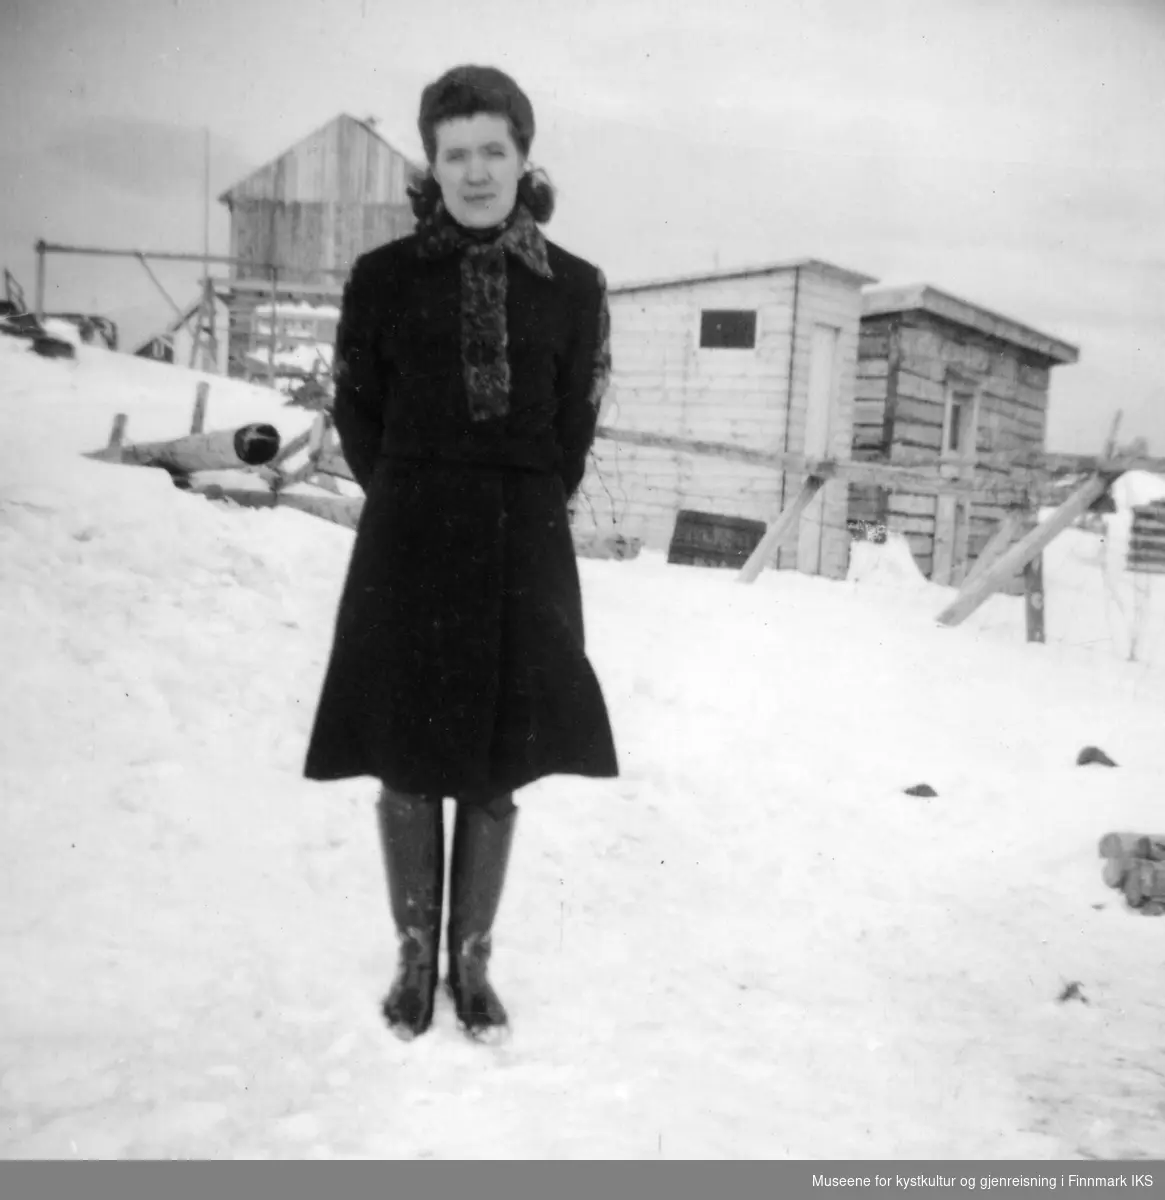 Rikarda Kristensen i kåpe og støvler. Arthur Ingebrigtsens hus i bakgrunnen.
Midt på bildet et utedo, ca 1954.